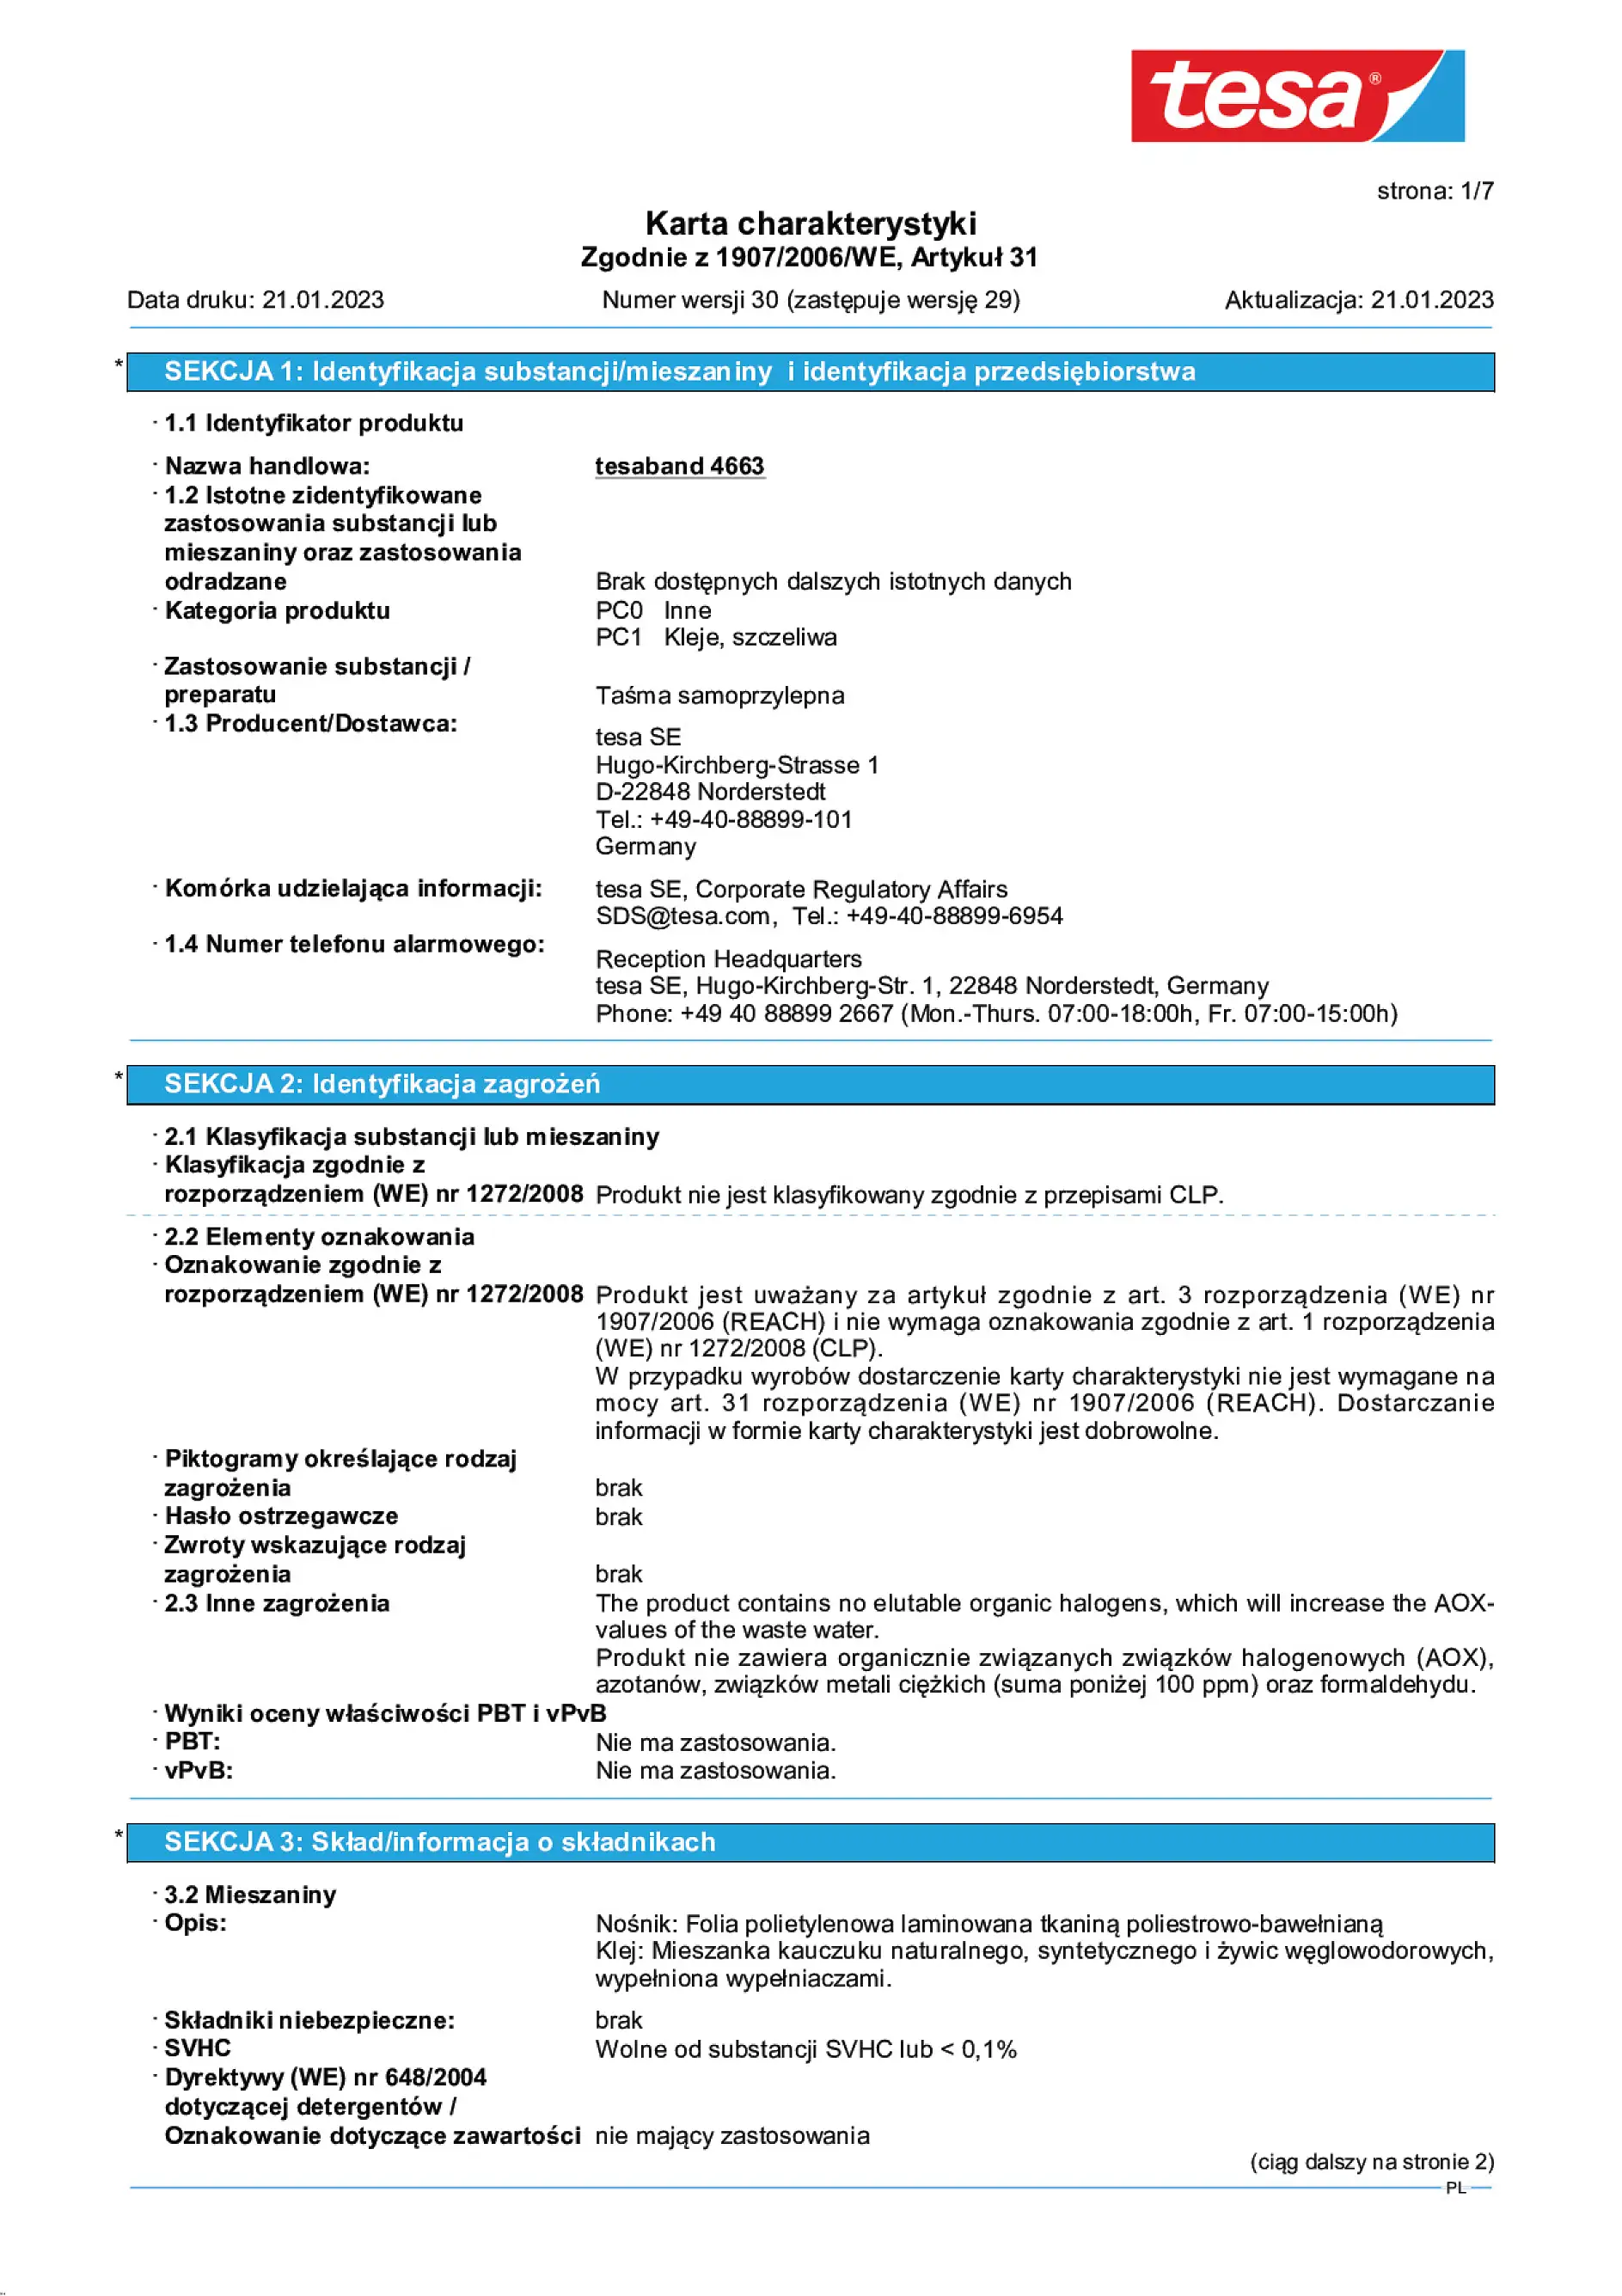 Safety data sheet_tesa® Professional 04663_pl-PL_v30